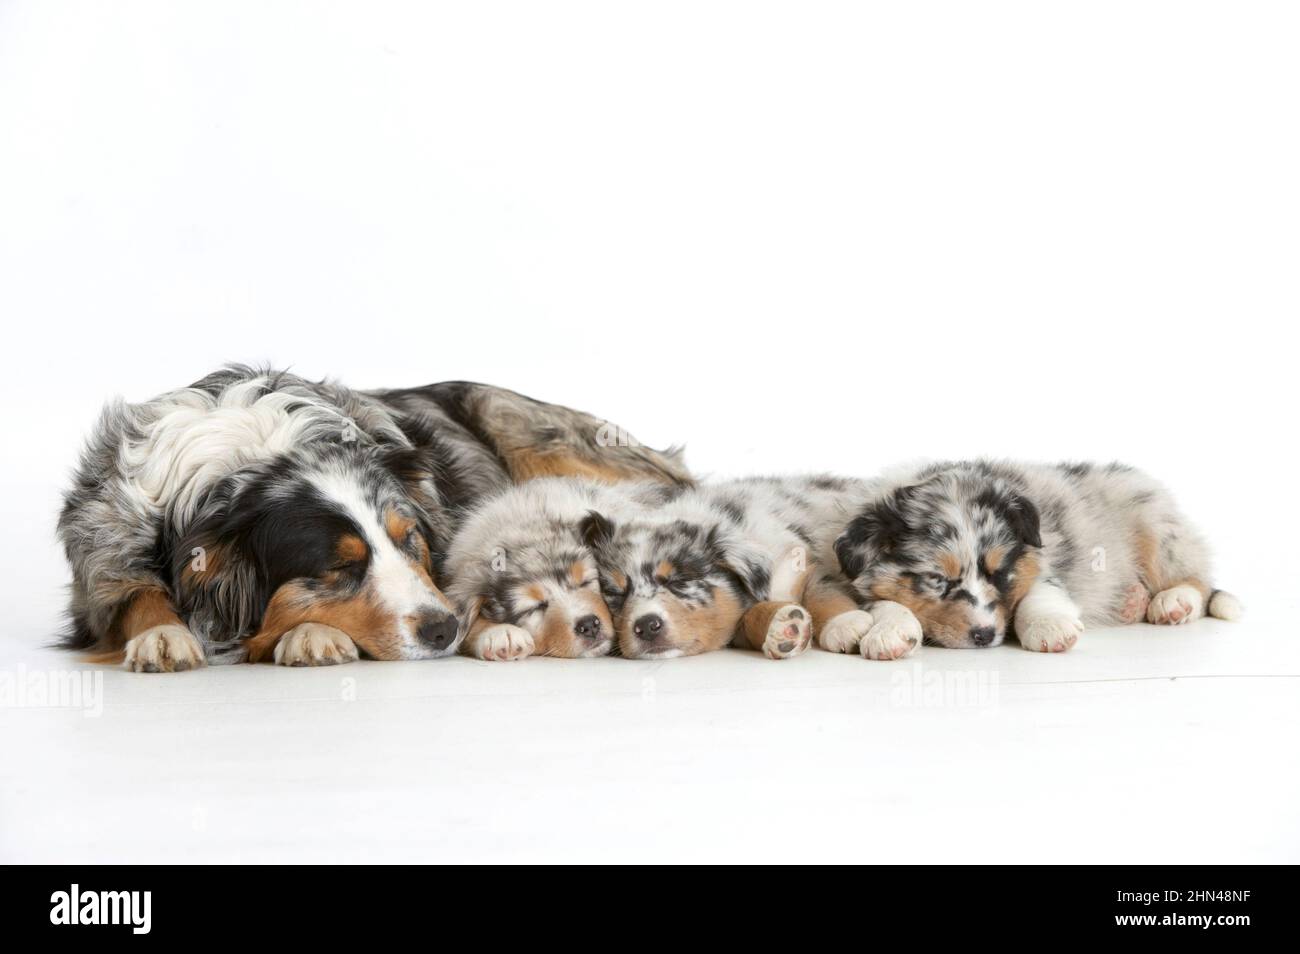 Pastor australiano. Madre dormida con tres cachorros durmientes. Imagen de estudio sobre fondo blanco. Alemania Foto de stock